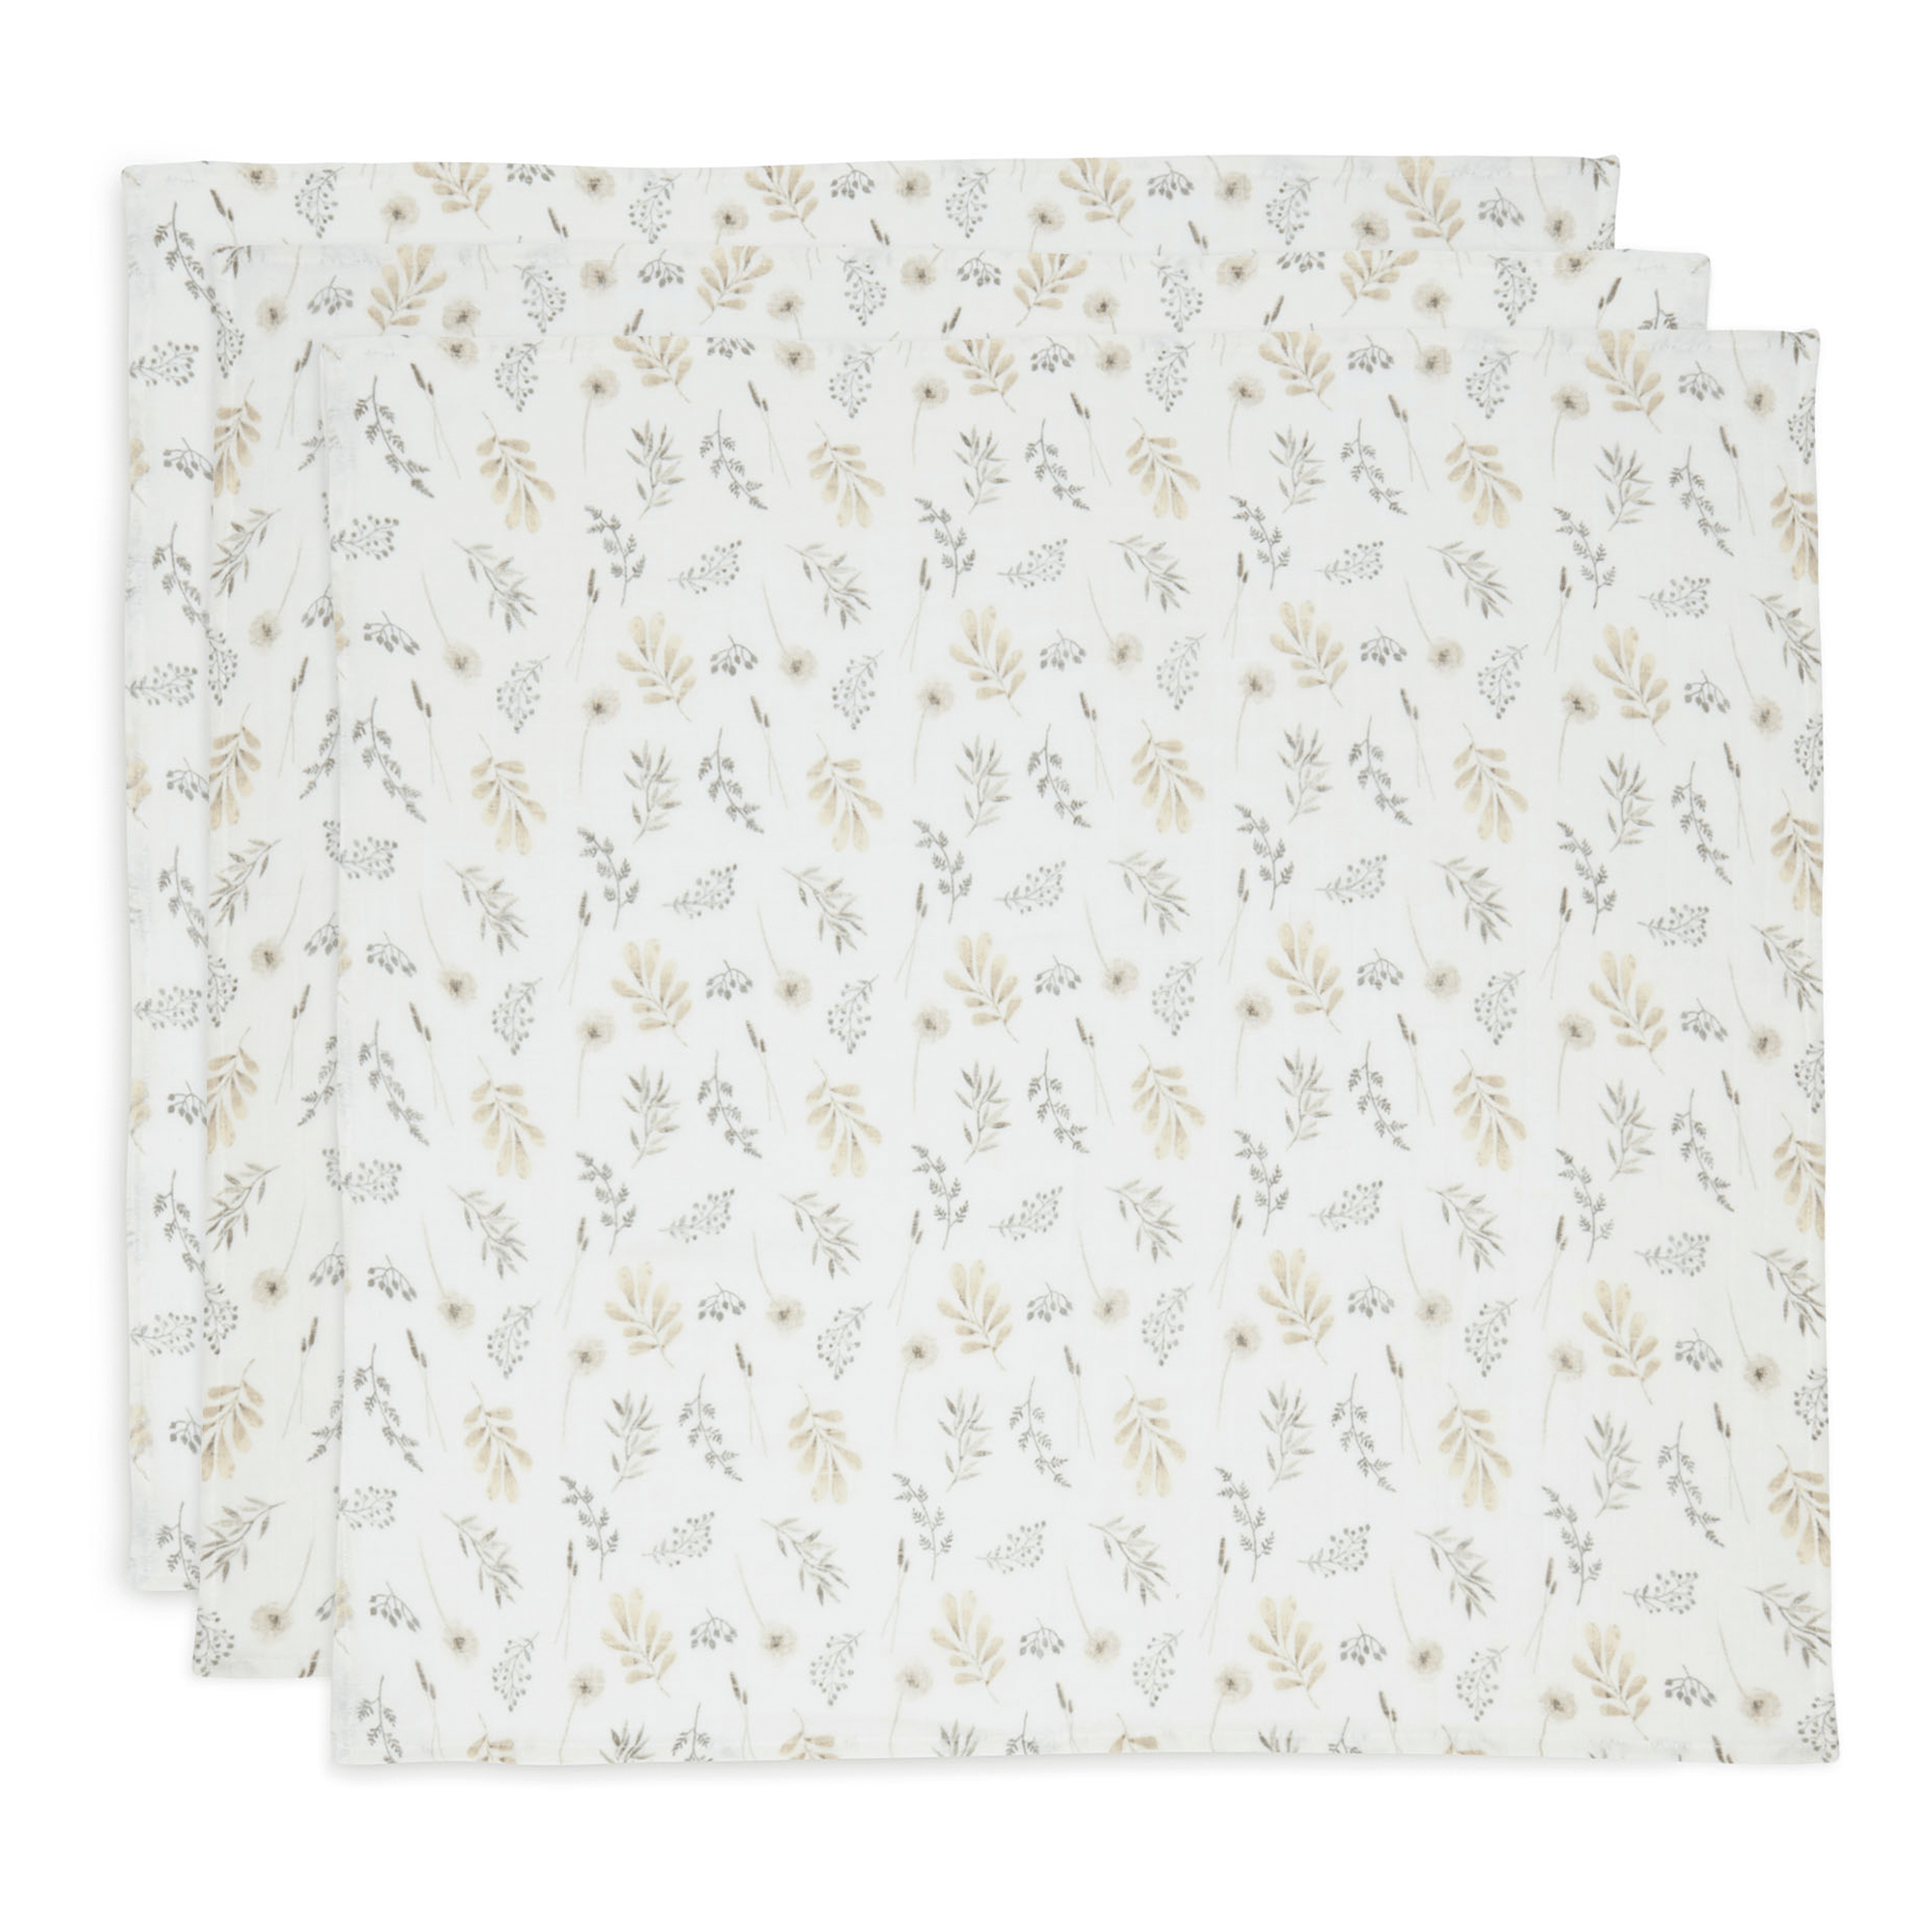 Mulltücher Wildflowers jollein Weiß 2000583241508 1